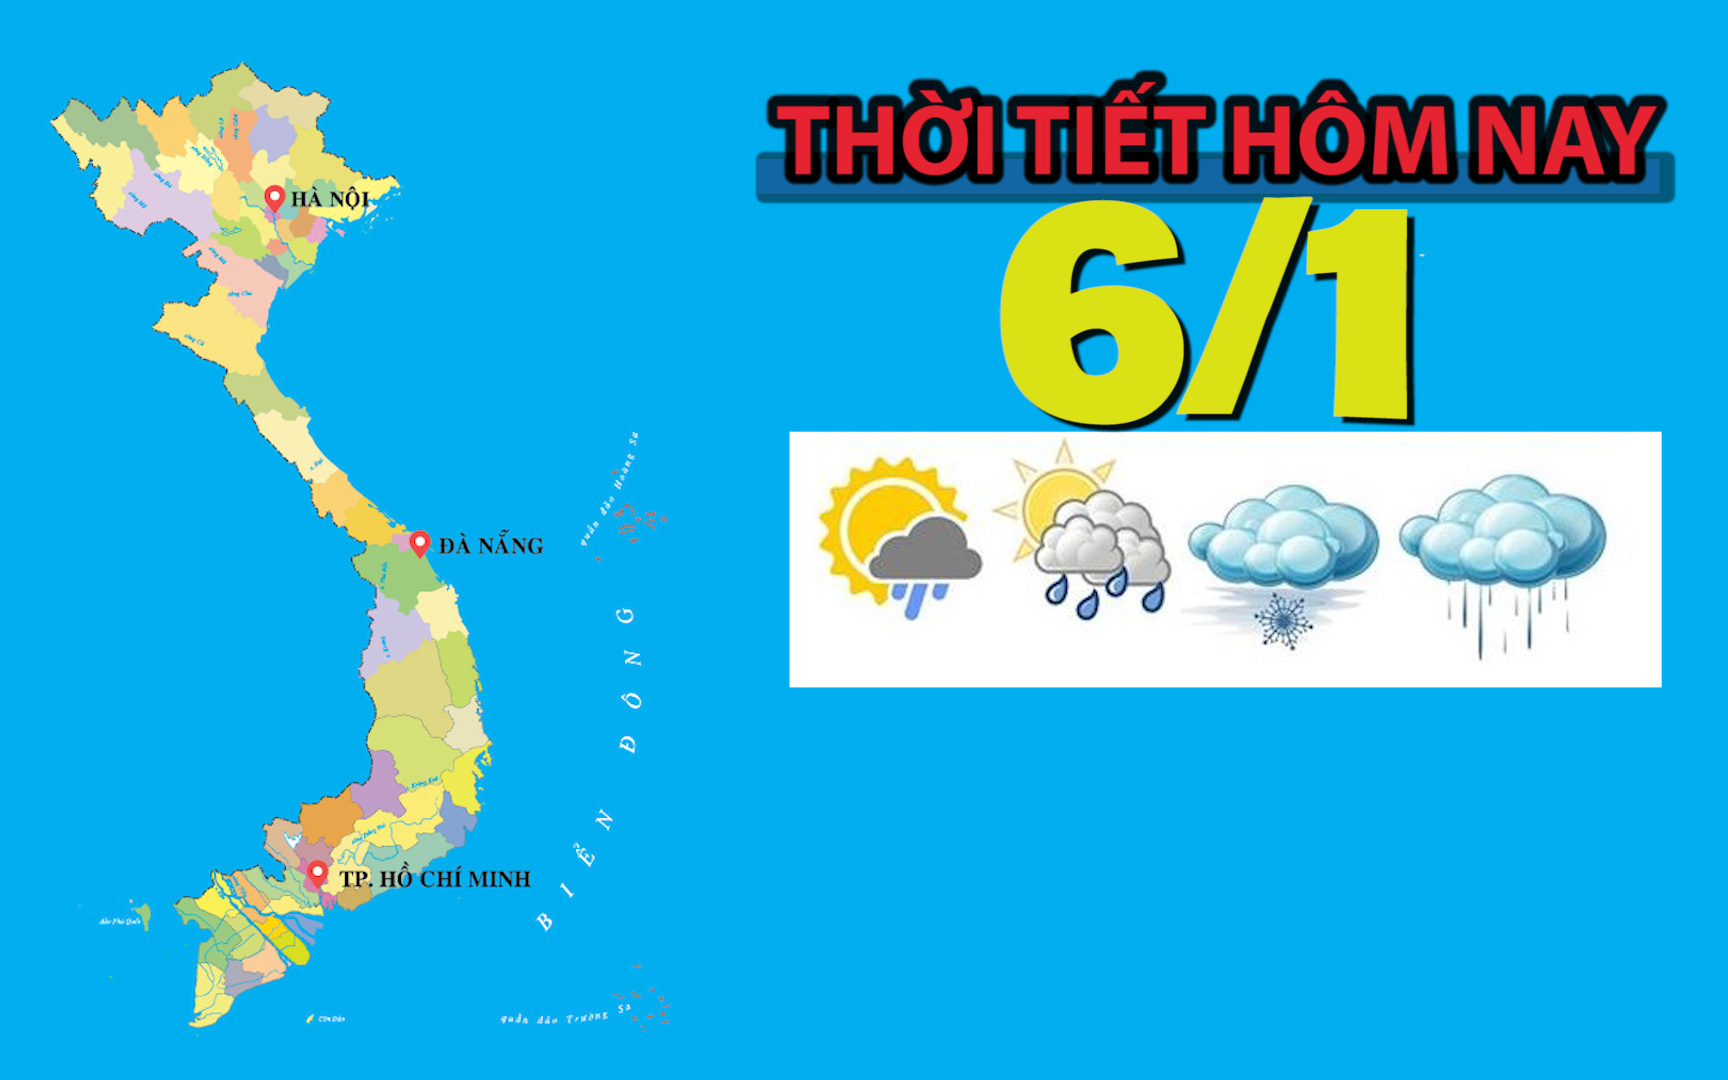 Thời tiết hôm nay 6/1: Trung Bộ và Nam Bộ có UV ở mức nguy cơ gây hại cao